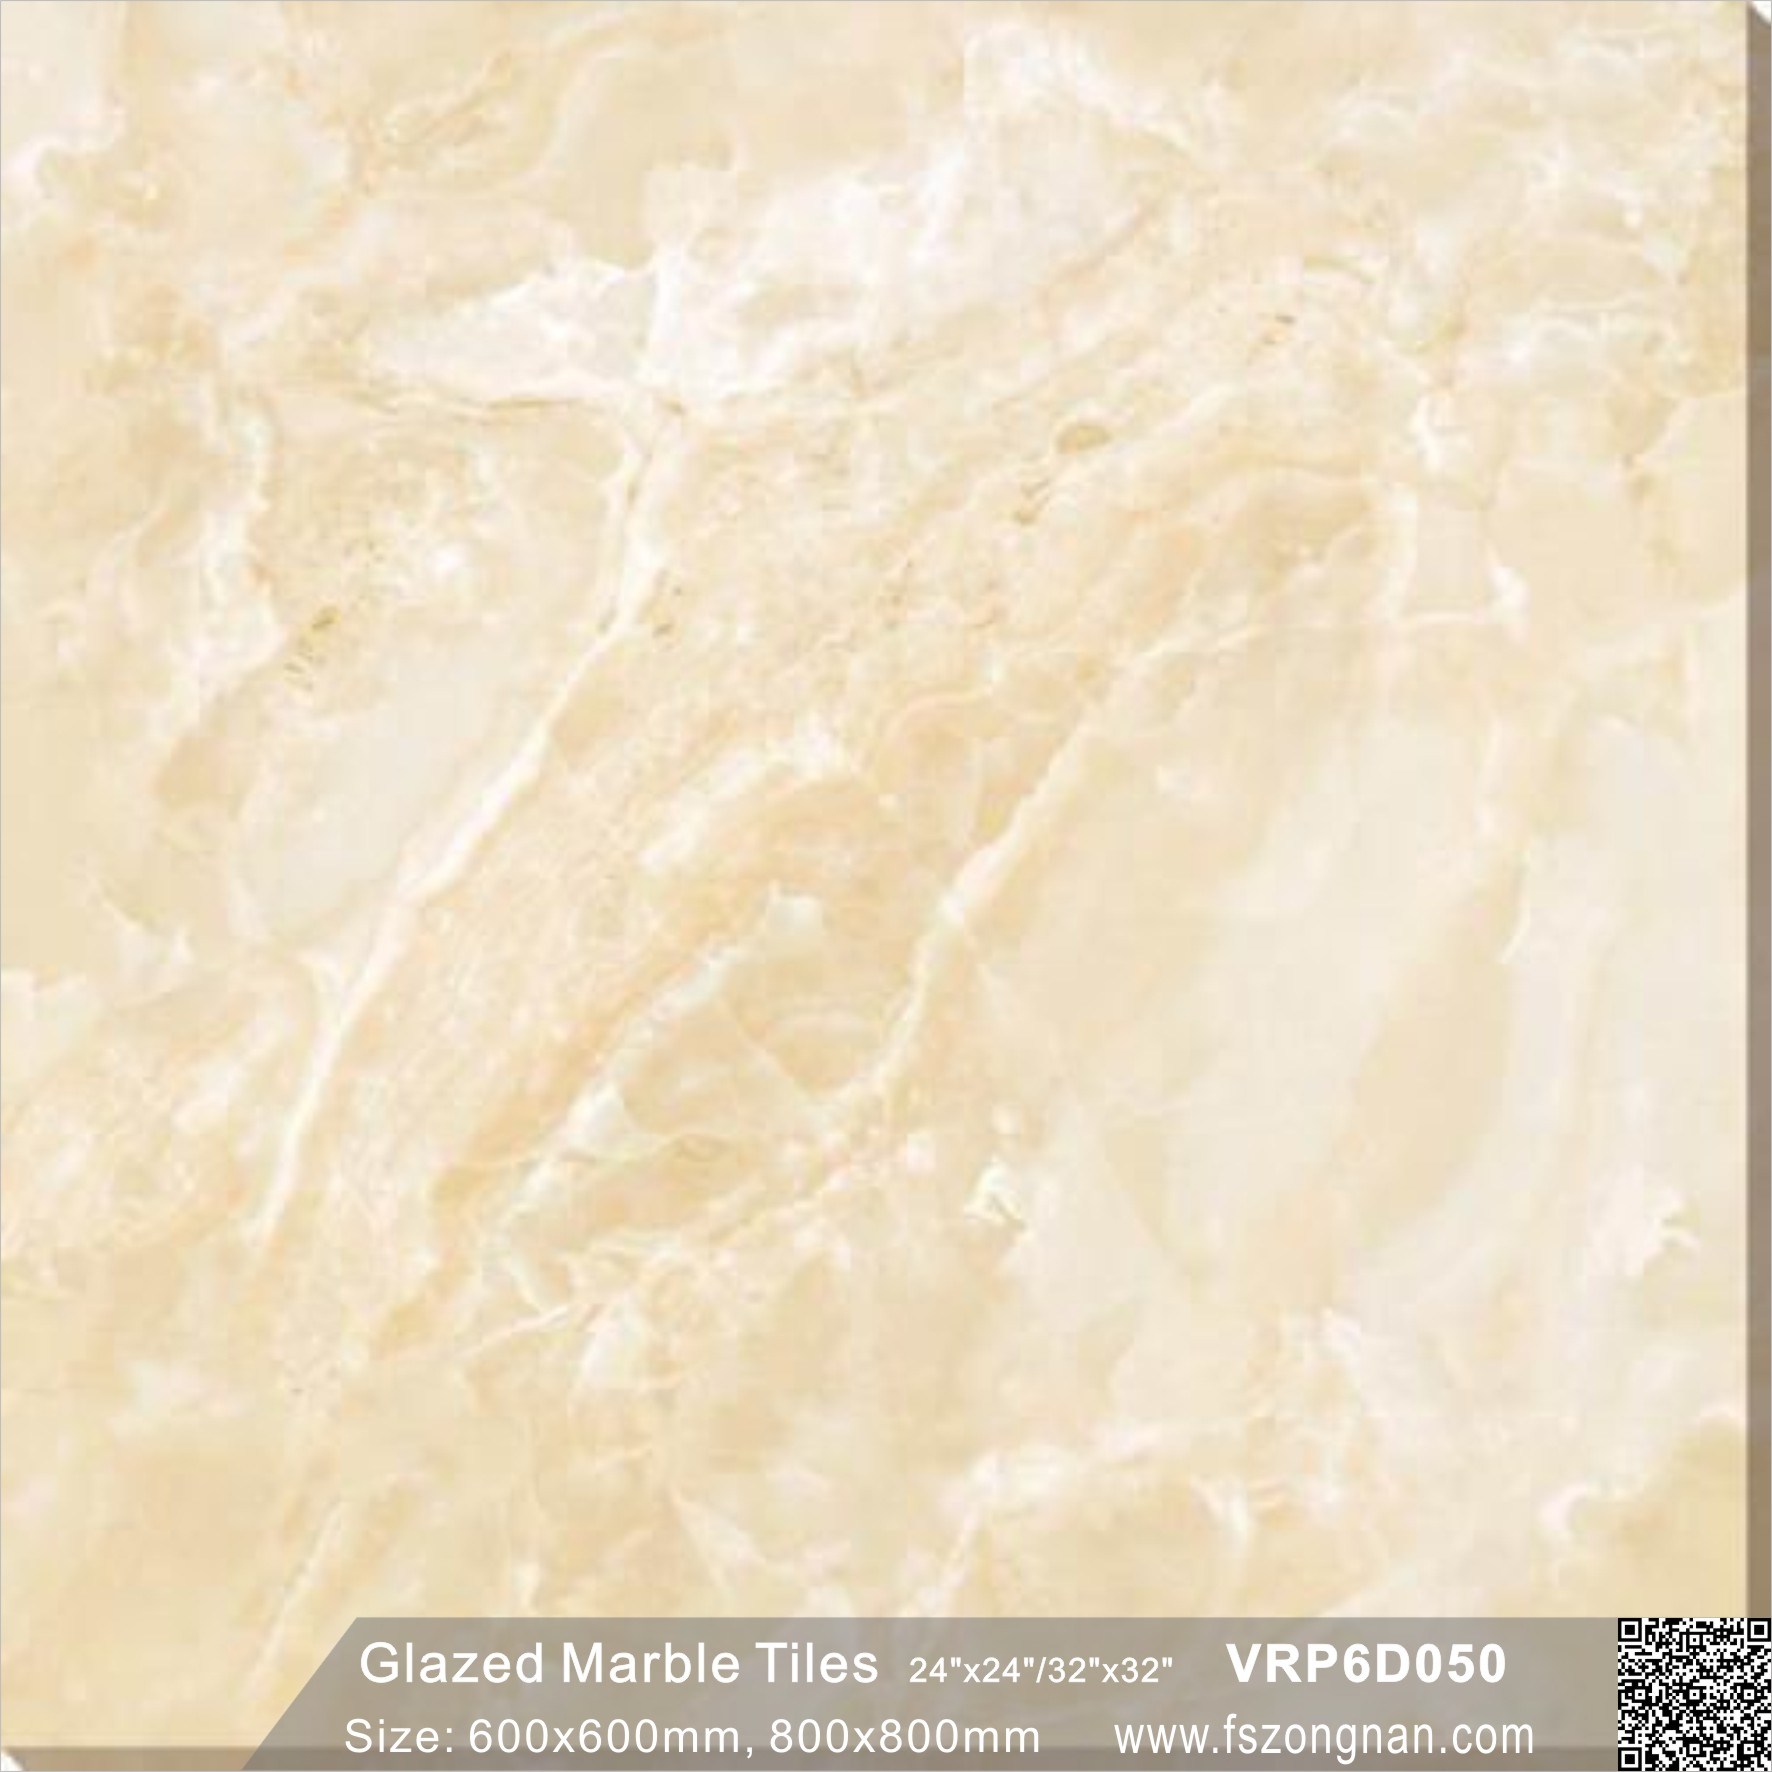 Light Color Building Material Glazed Marble Polished Porcelain Flooring Tile (600X600mm, VRP6D050)